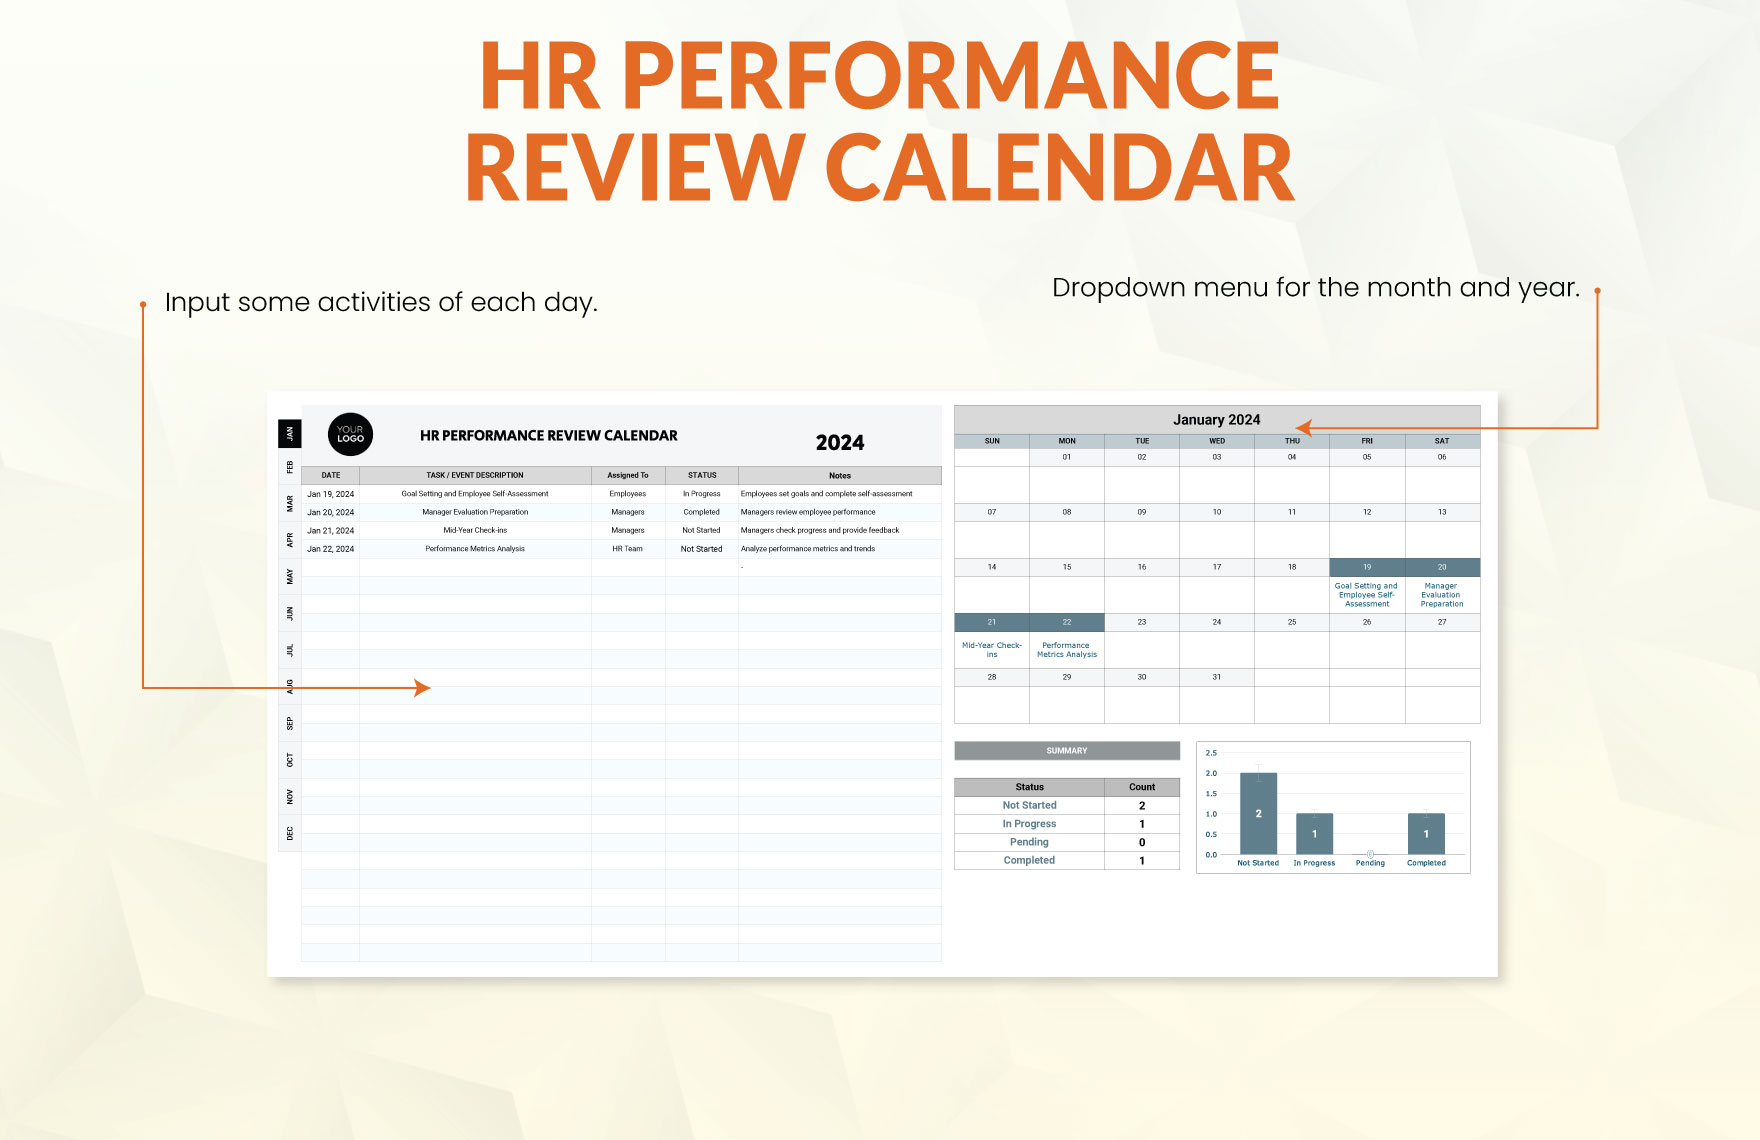 HR Performance Review Calendar Template